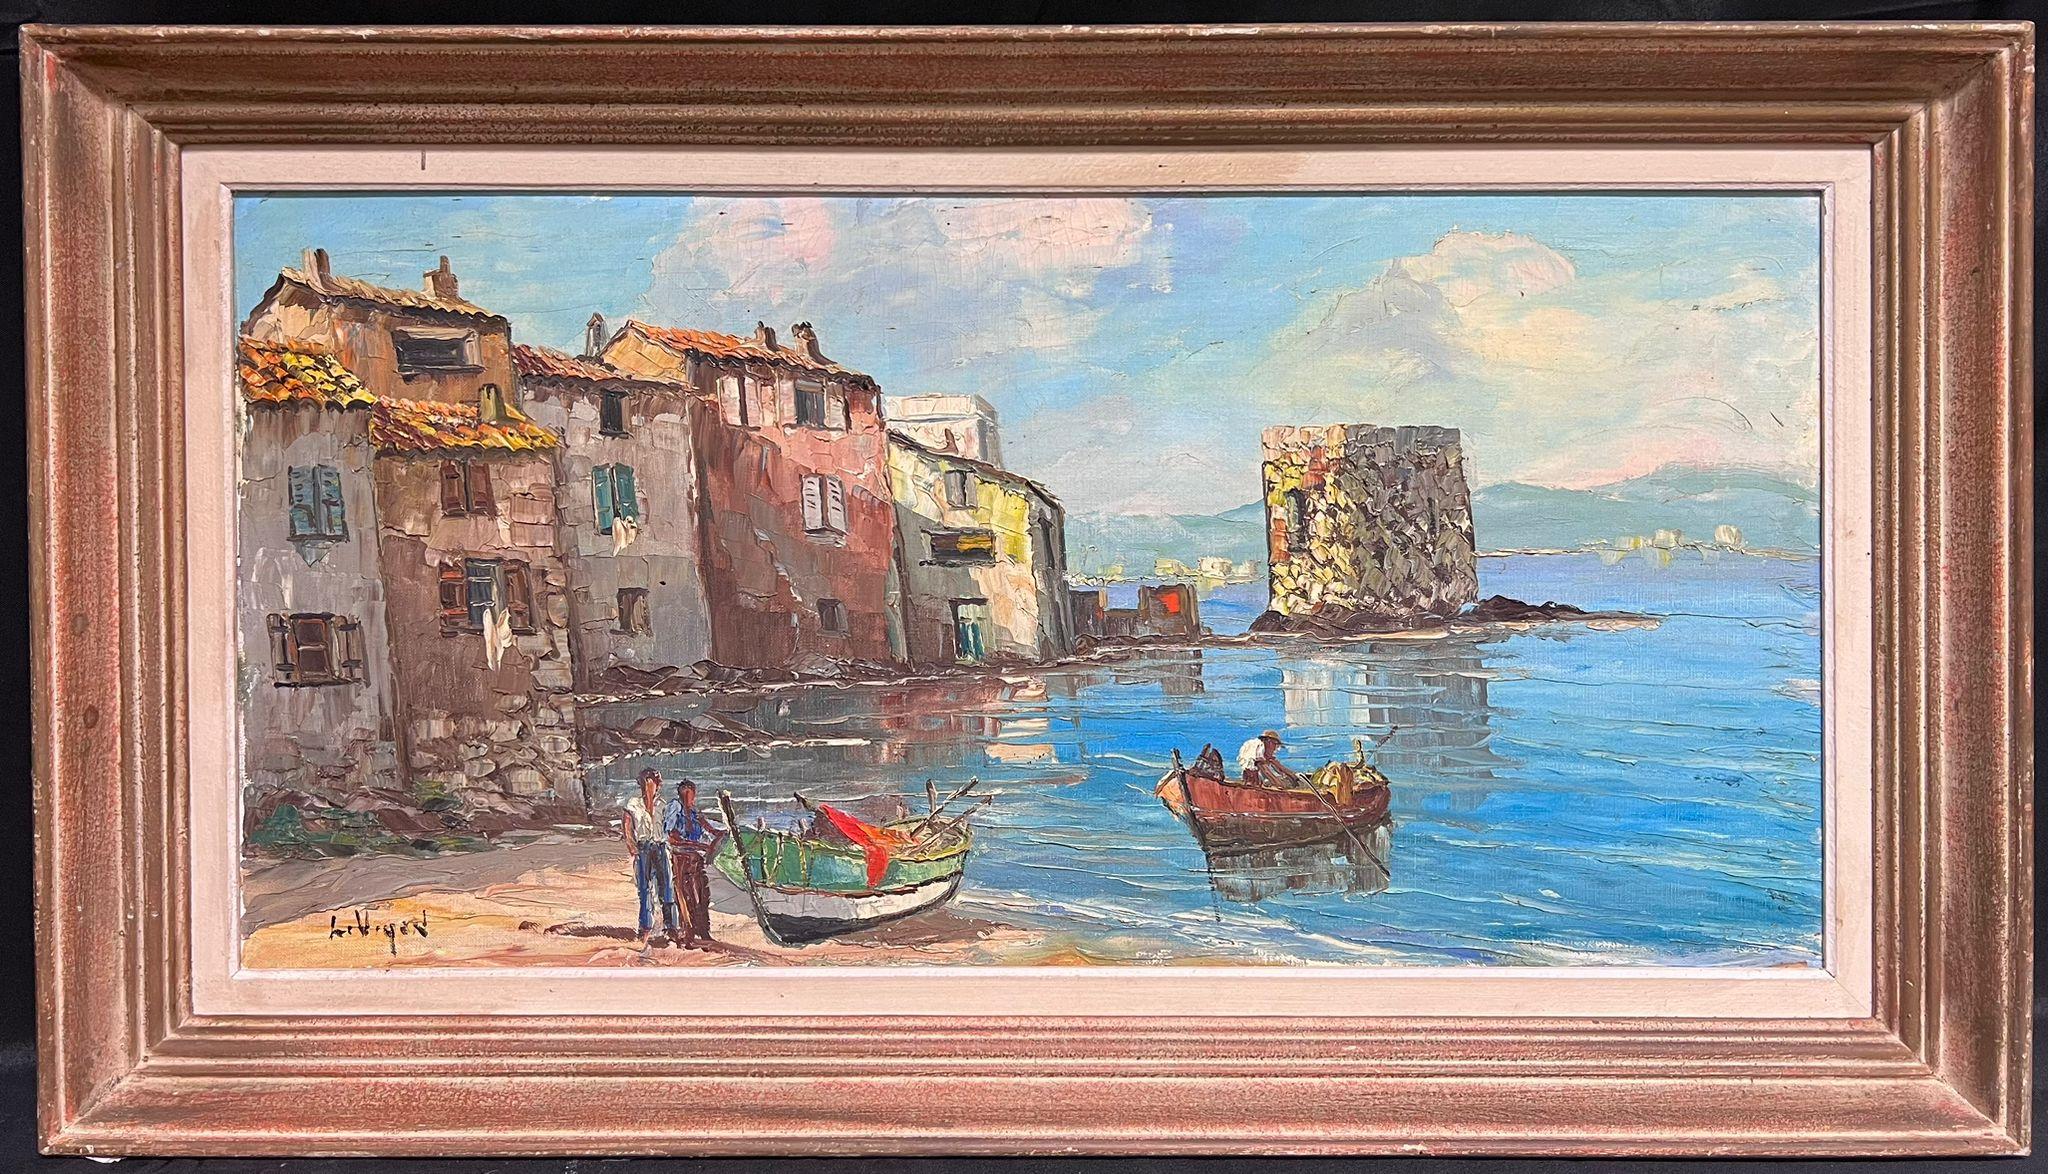 Landscape Painting Louis Vigon - Peinture à l'huile post-impressionniste française du milieu du 20e siècle, signée du port de St Tropez